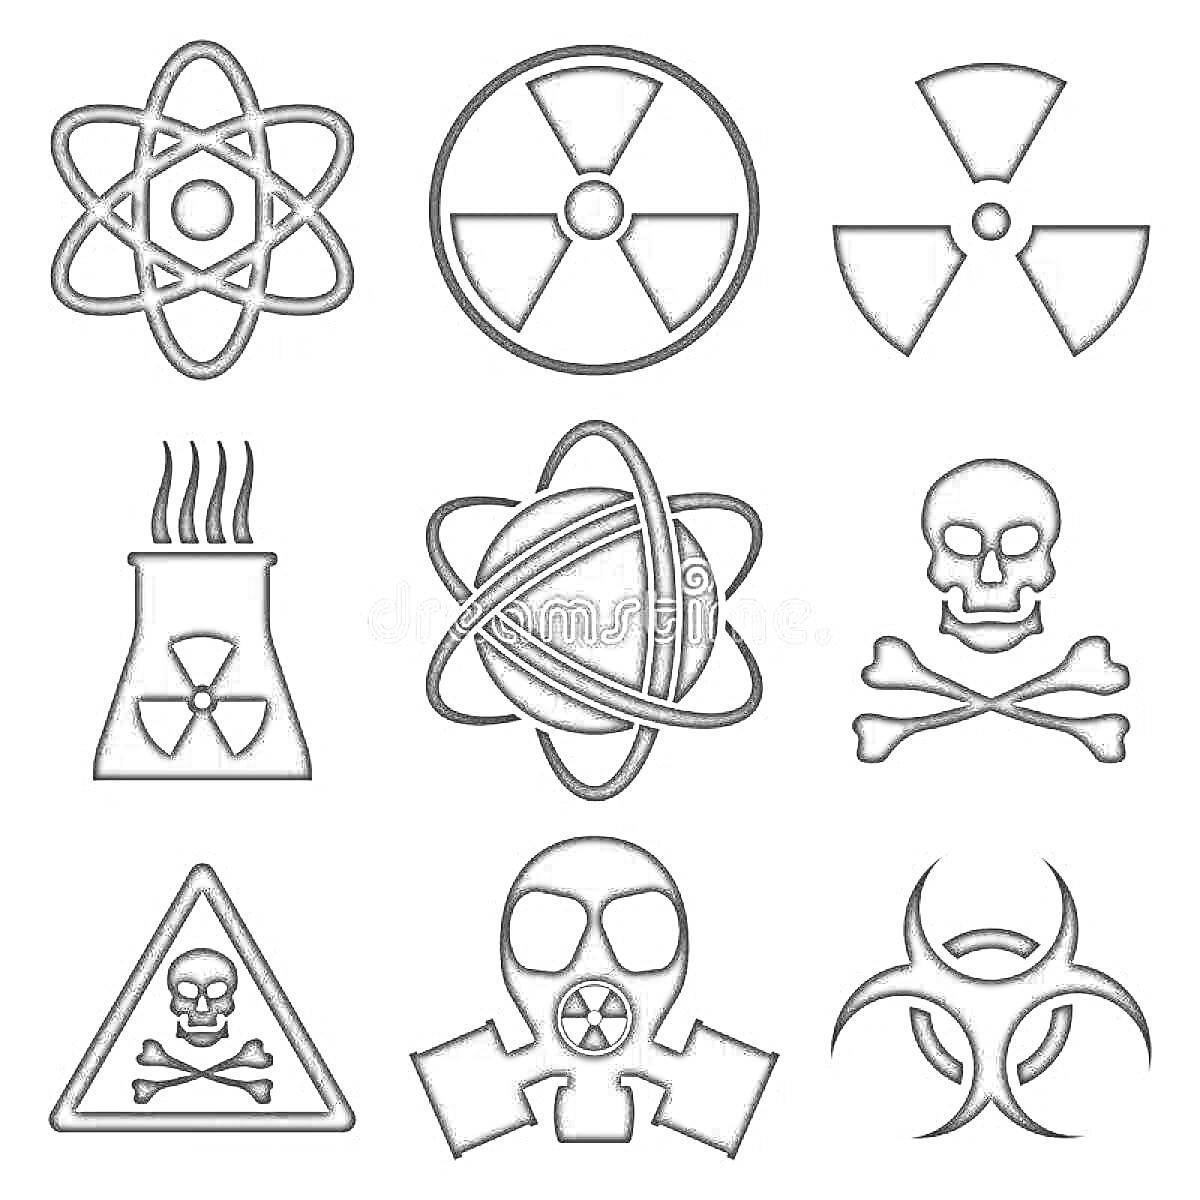 Раскраска Набор символов радиации, атомной энергии, опасности и биологической угрозы, включая атомный символ, знаки радиации, атомную электростанцию, череп и кости, предупреждающий треугольник и маску